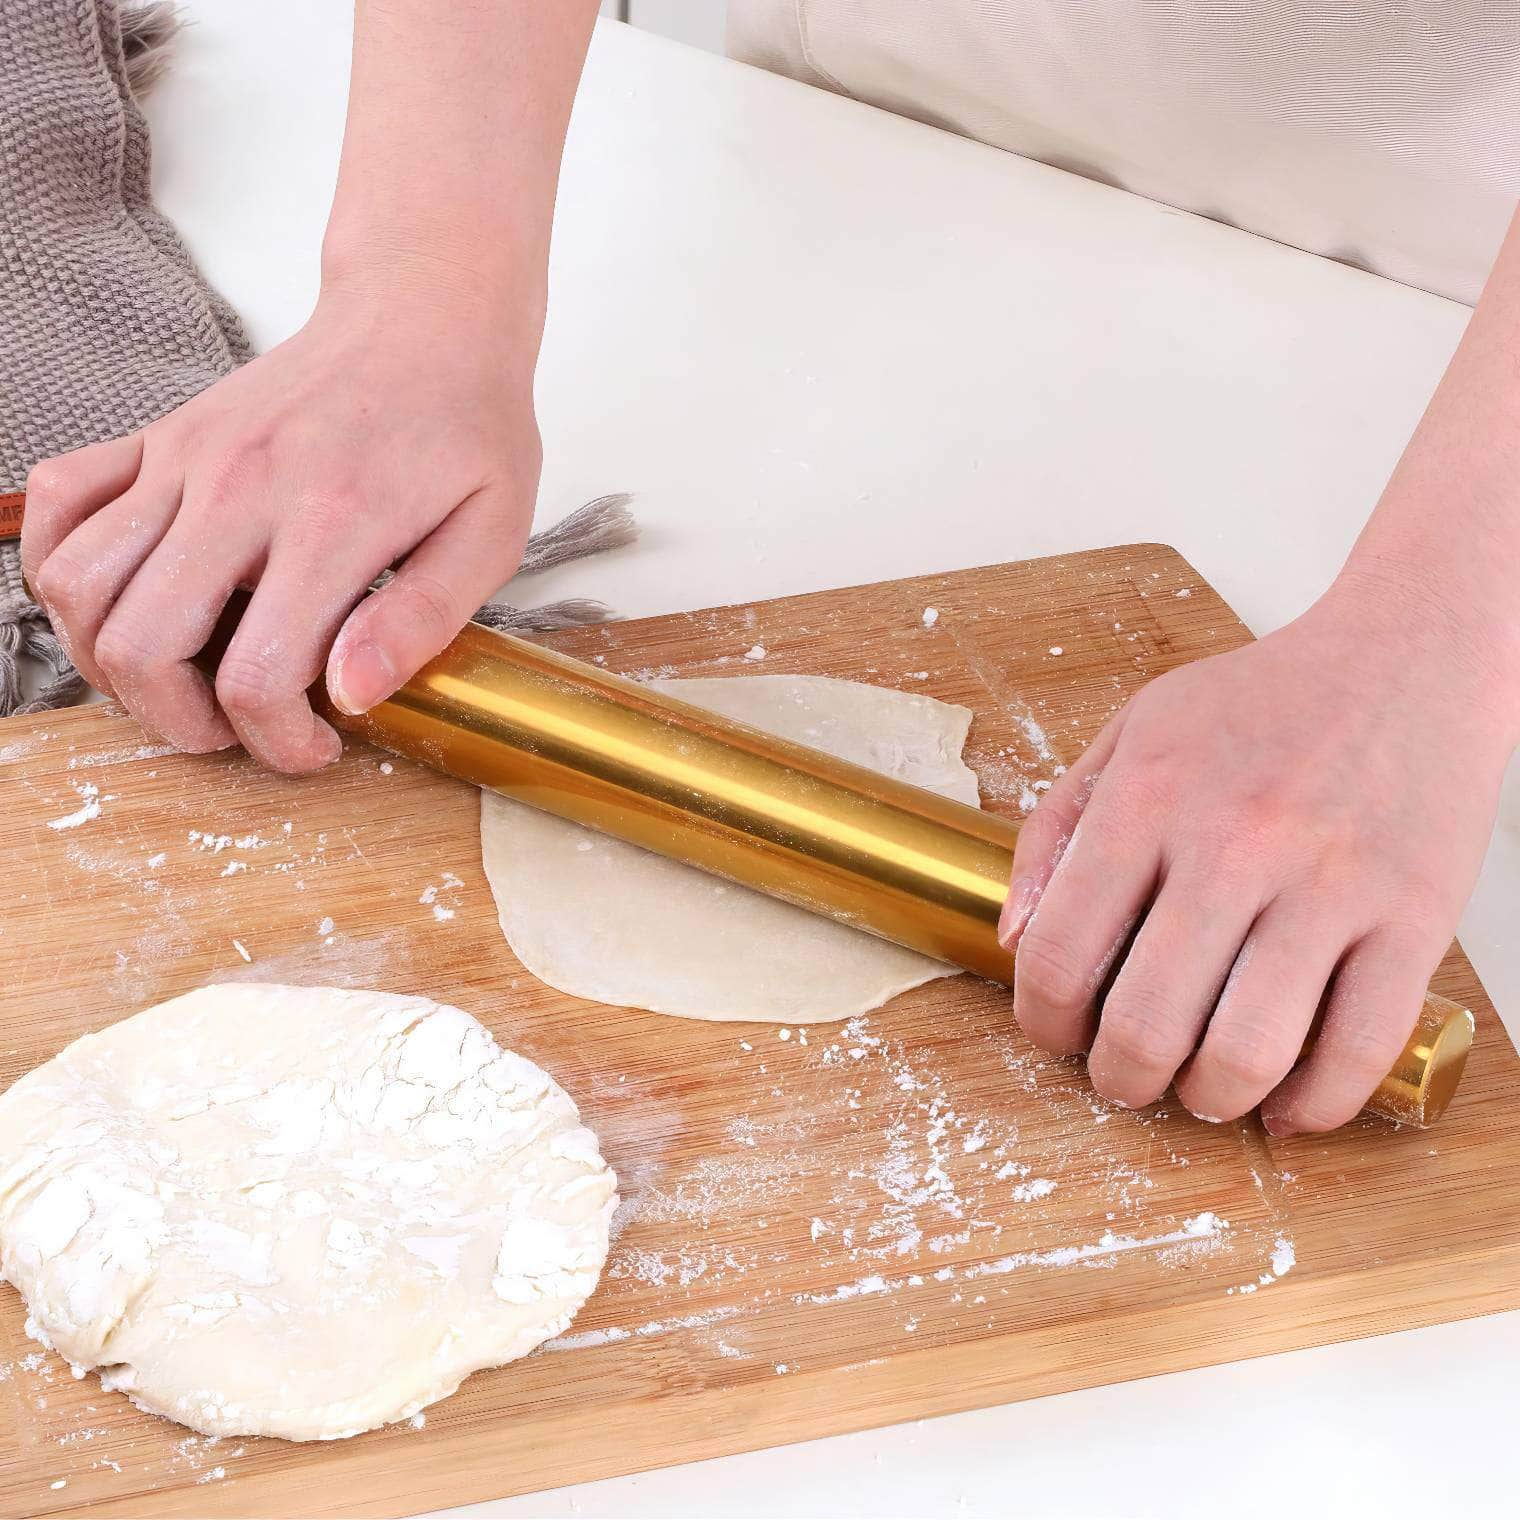 Stainless Steel Matt Sanding Rolling Pin - Non-Stick Kitchen Roller for Baking